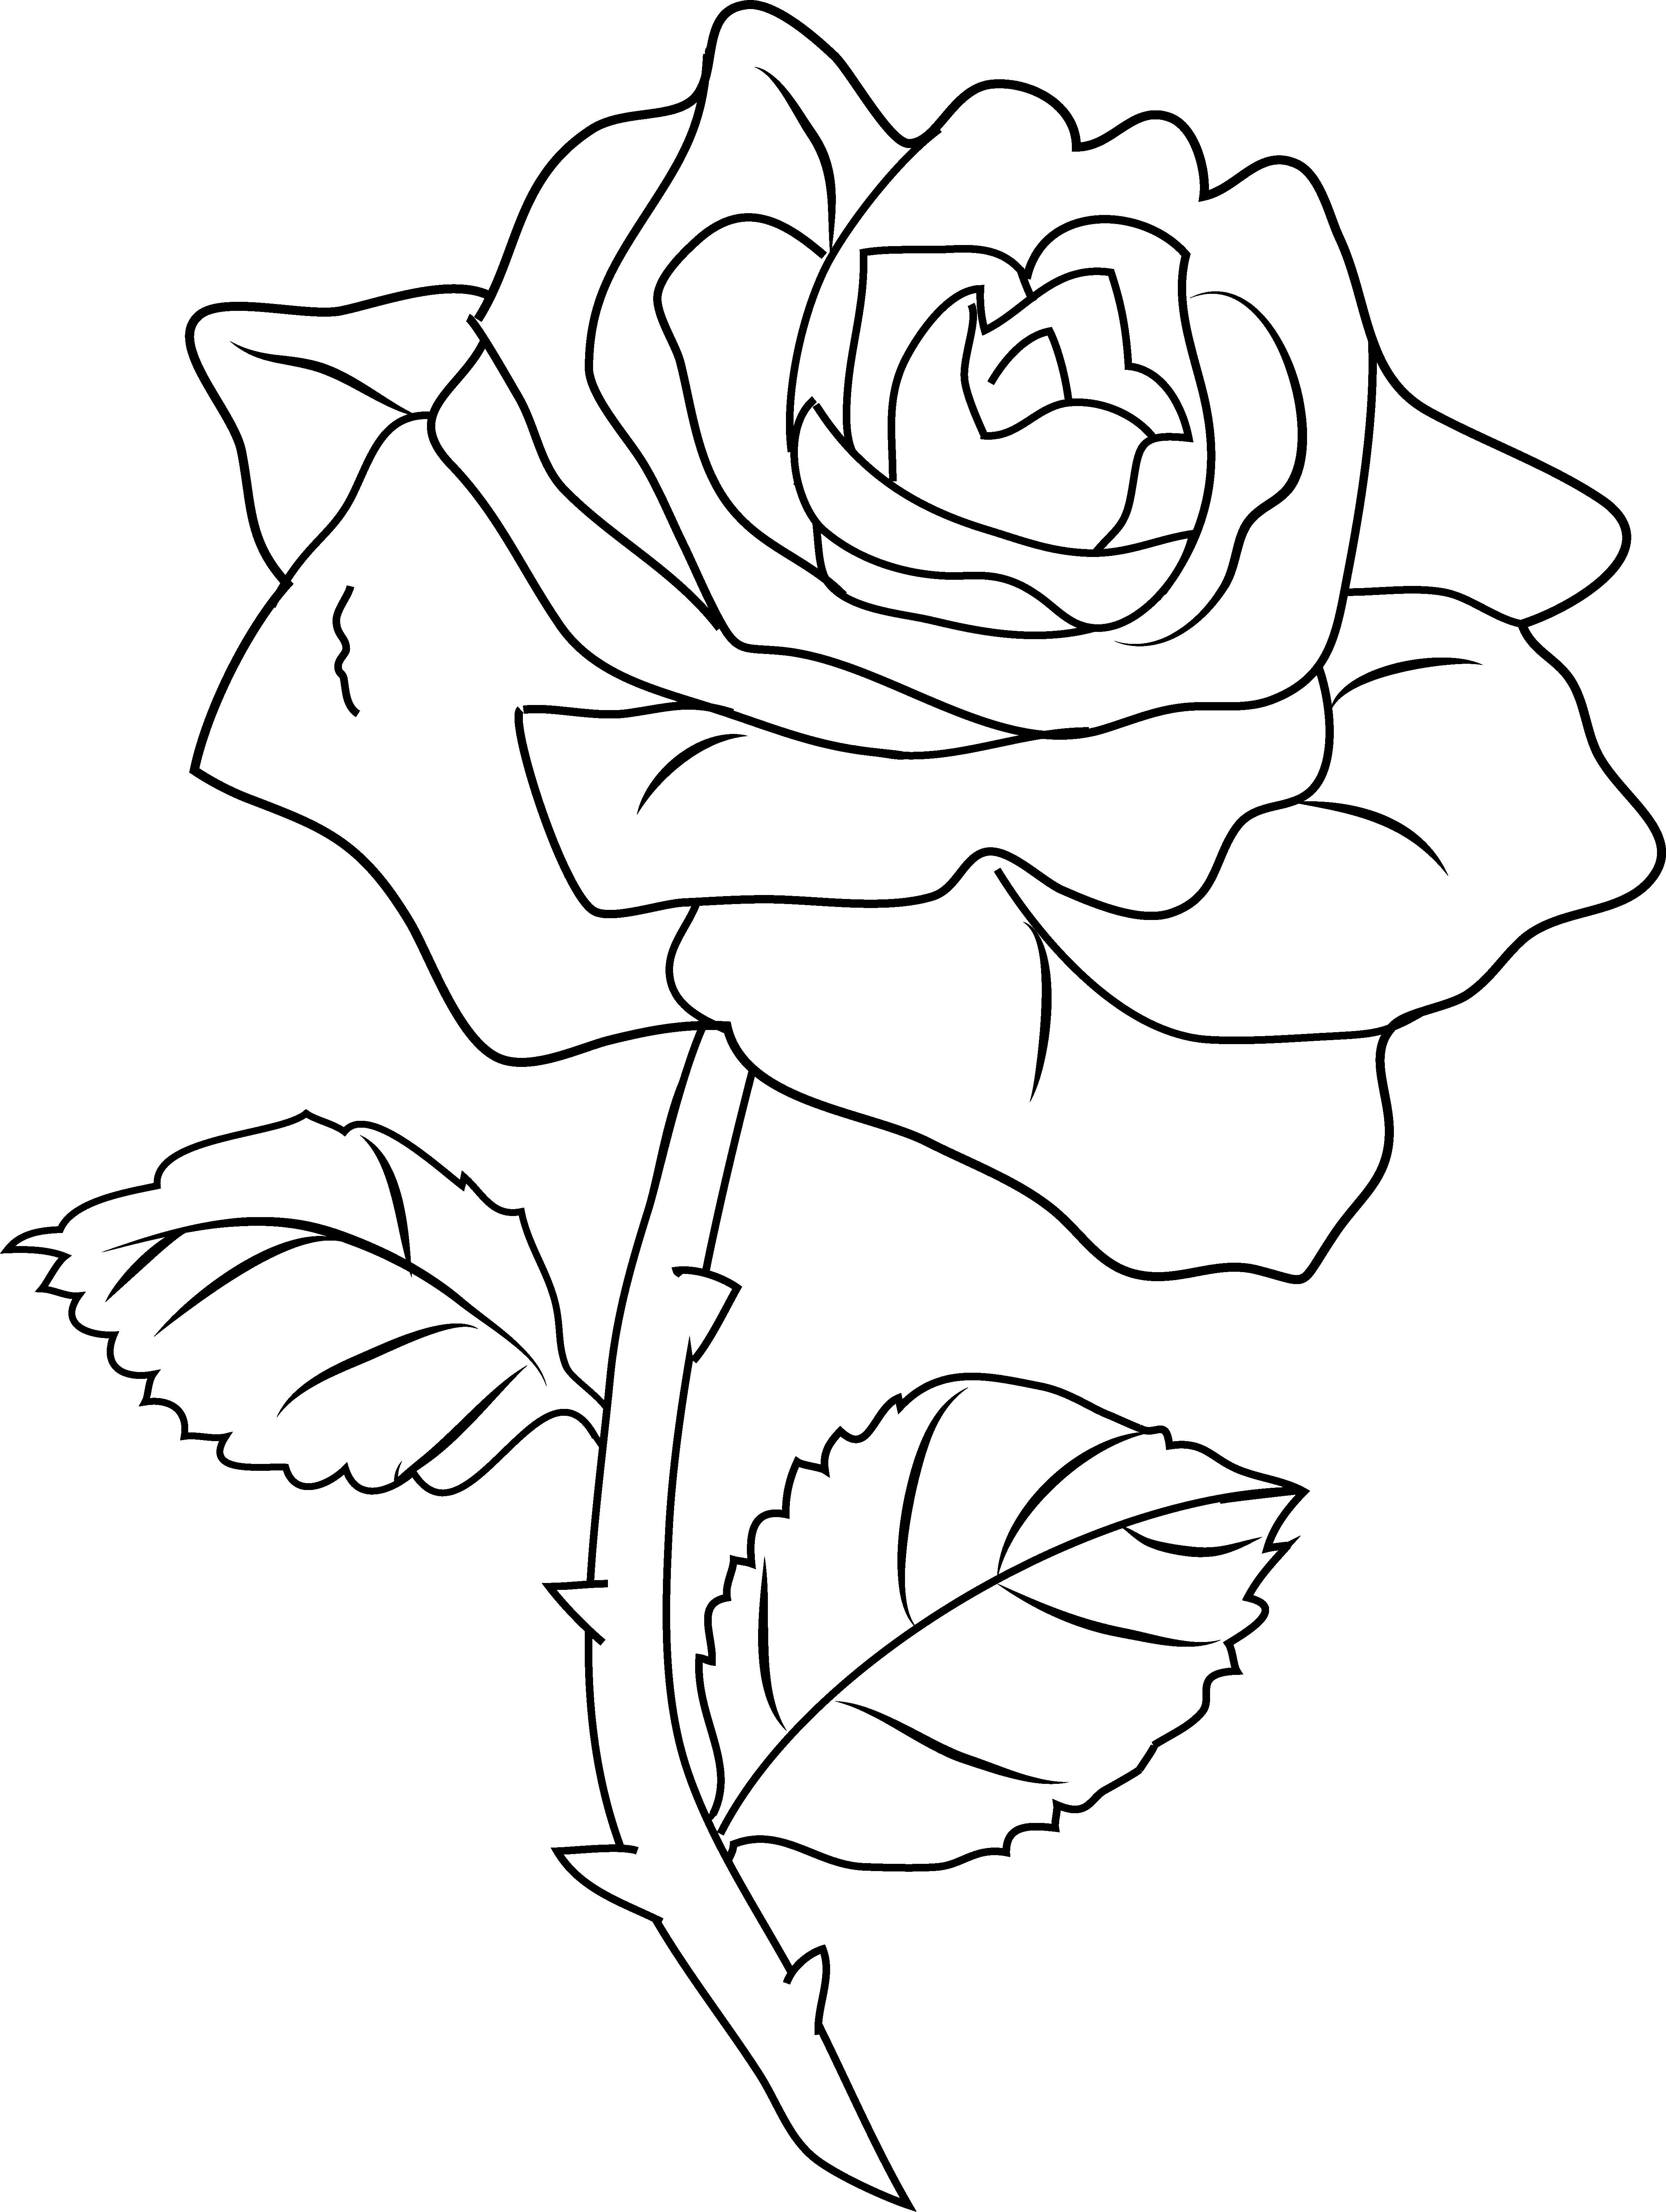 knumathise: Rose Clip Art Outline Images